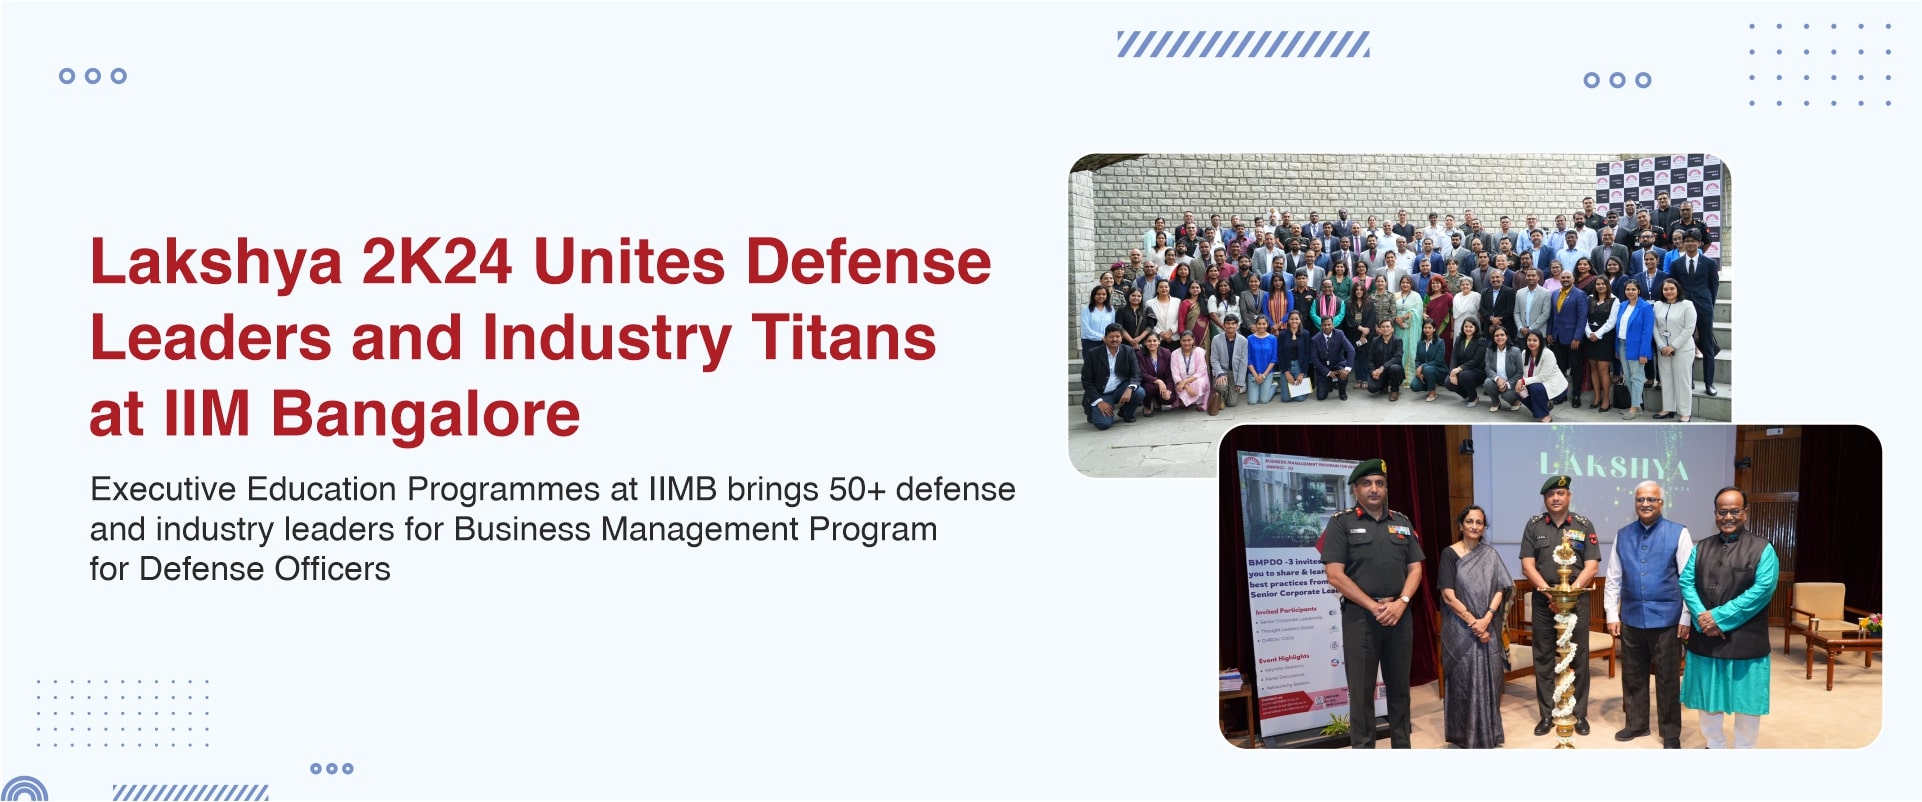 Lakshya 2K24 Unites Defense Leaders and Industry Titans at IIM Bangalore